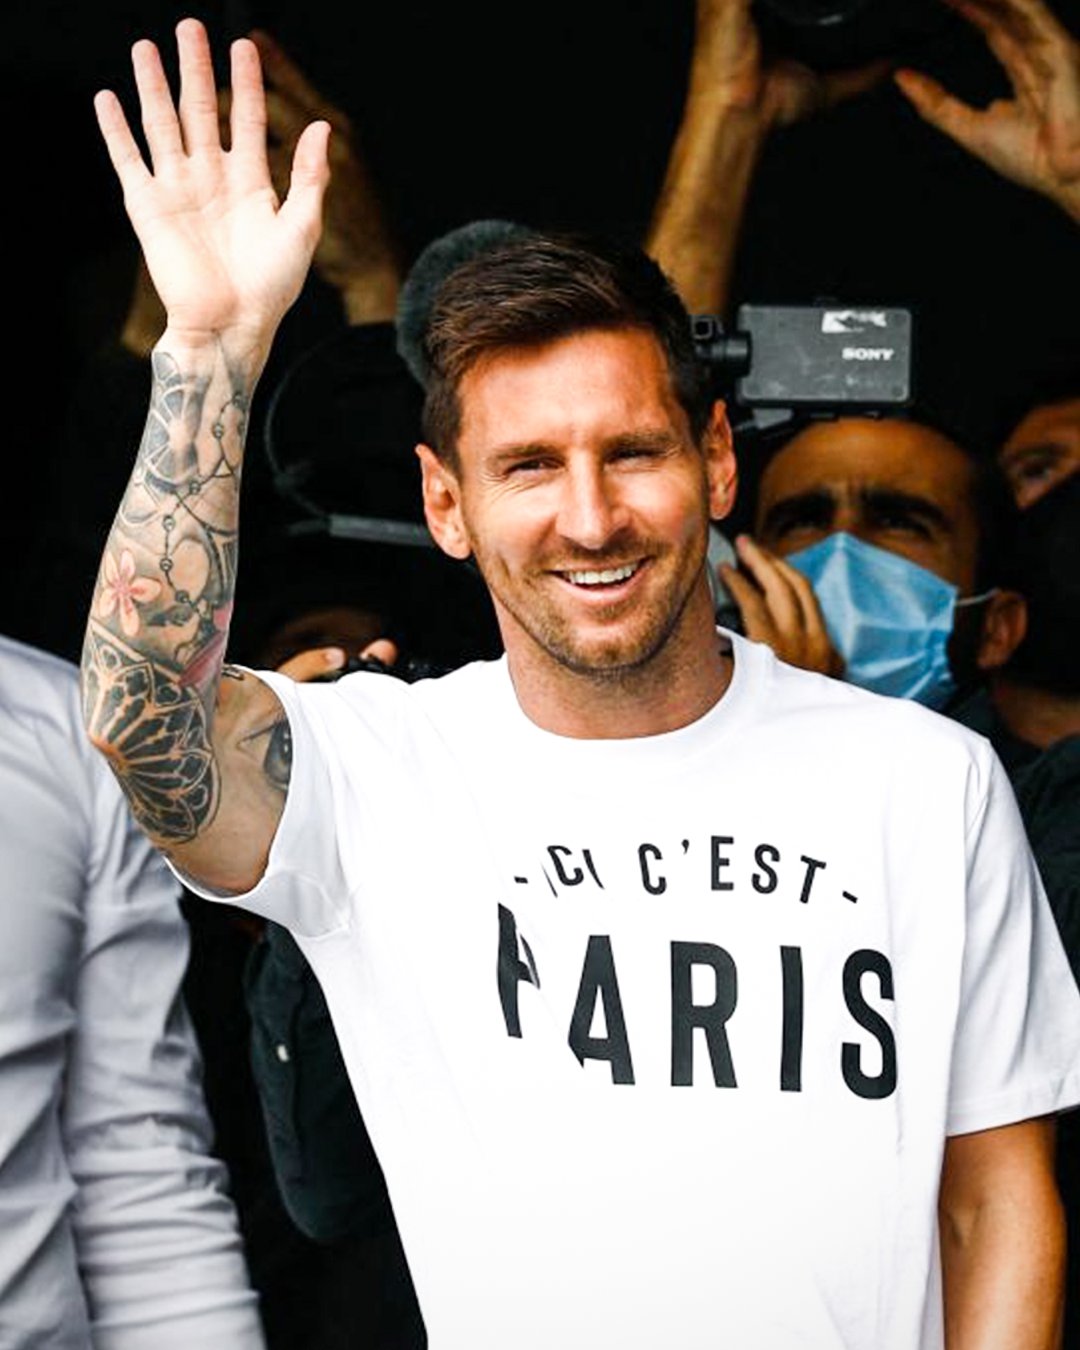 Có ai đang nhớ Messi không? Với hình ảnh Messi vẫy tay vui vẻ, bạn sẽ nhận ra một Messi tràn đầy năng lượng và sự sống động.